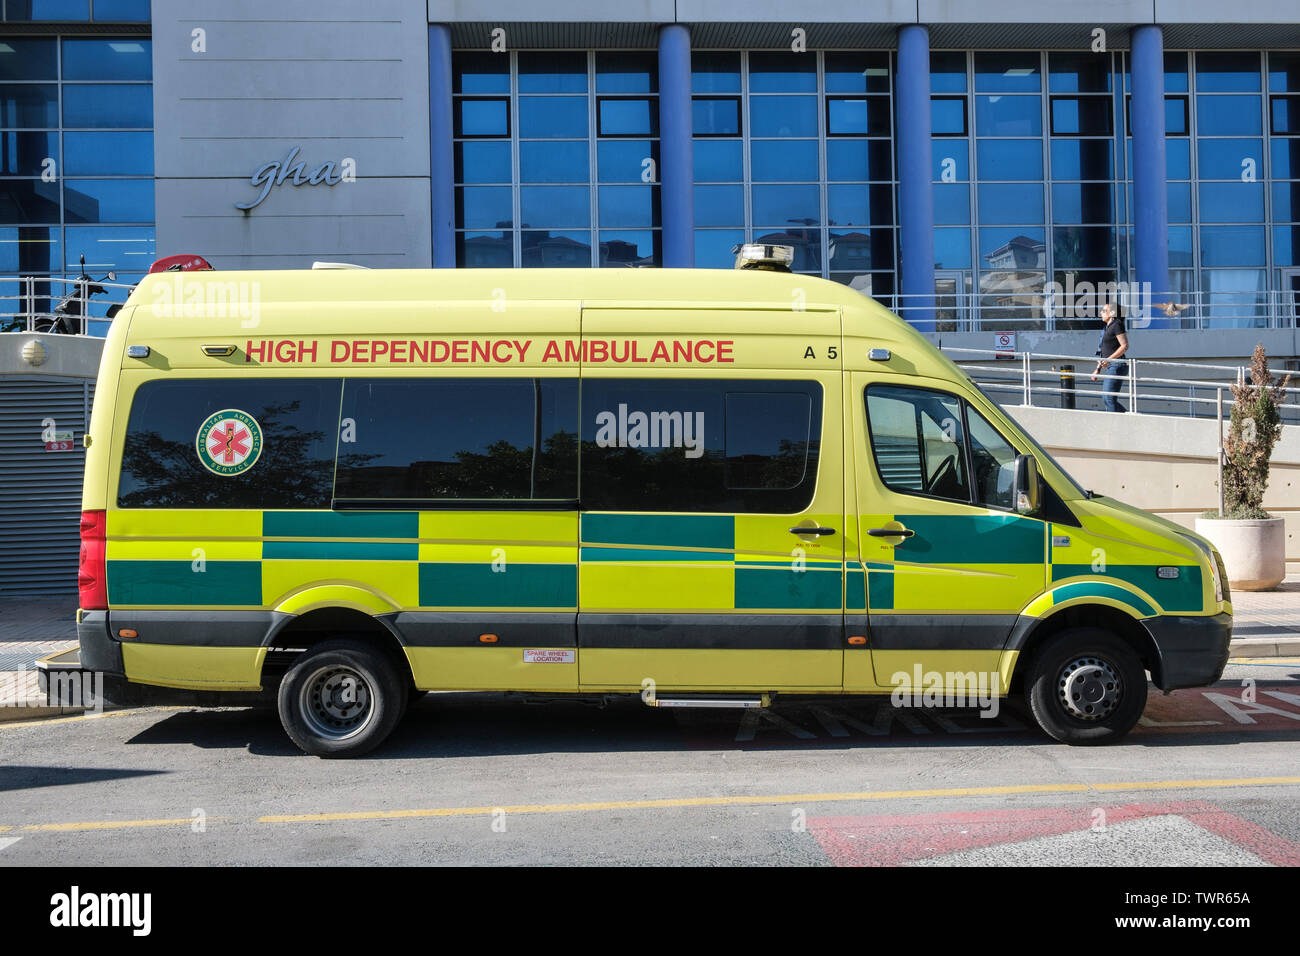 St Bernards Krankenhaus, Gibraltar, mit hoher Abhängigkeit Ambulanz außerhalb Stockfoto